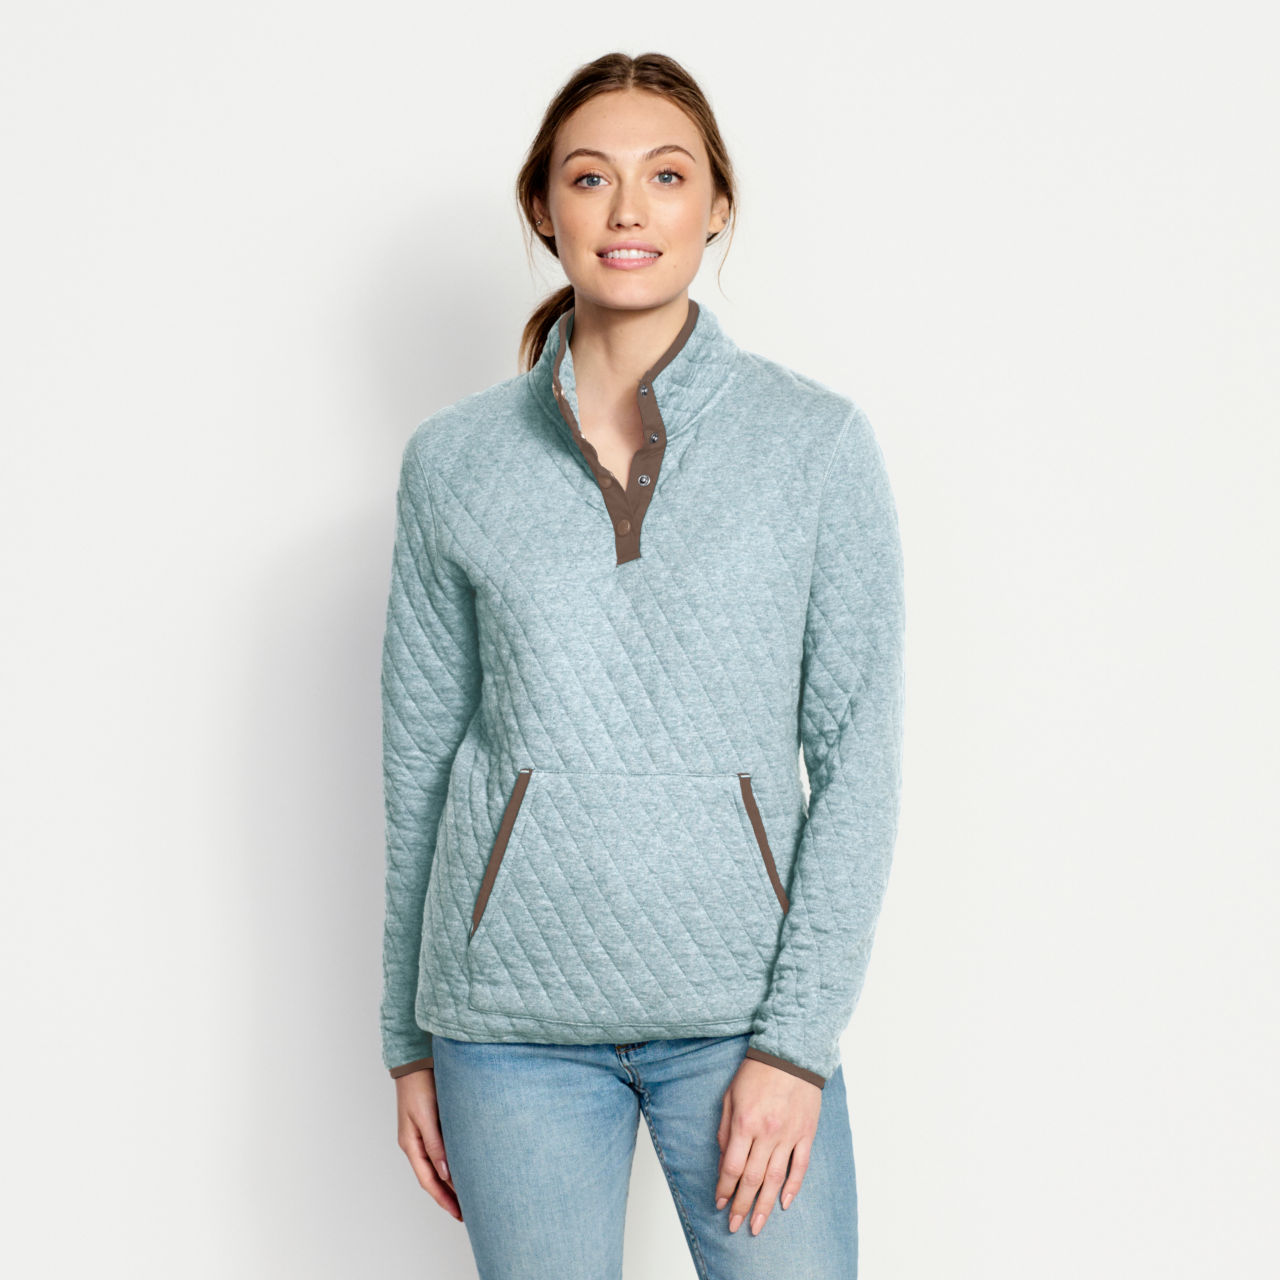 Women’s Outdoor Quilted Snap Sweatshirt -  image number 0